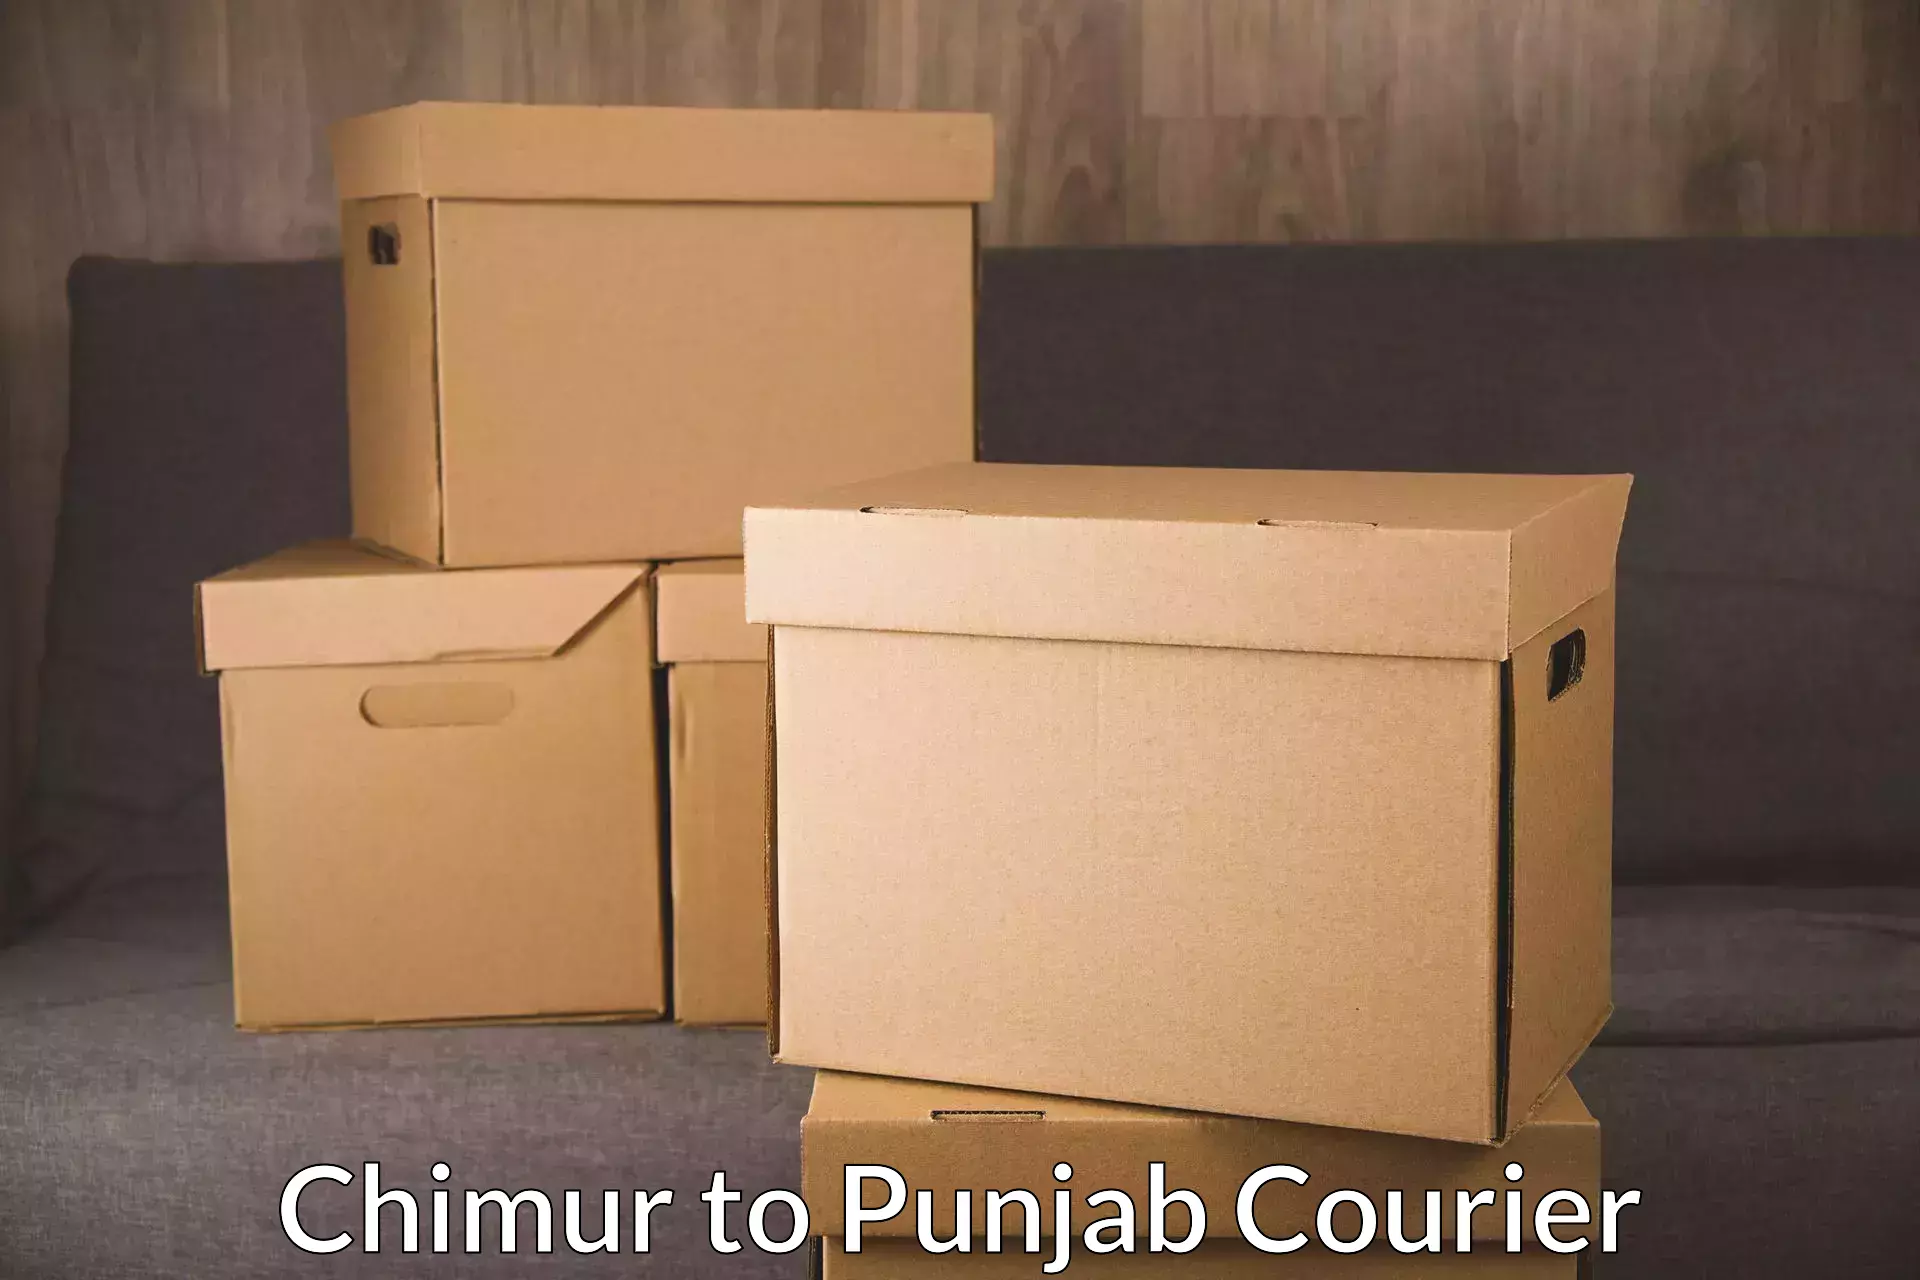 Express logistics service Chimur to Zirakpur